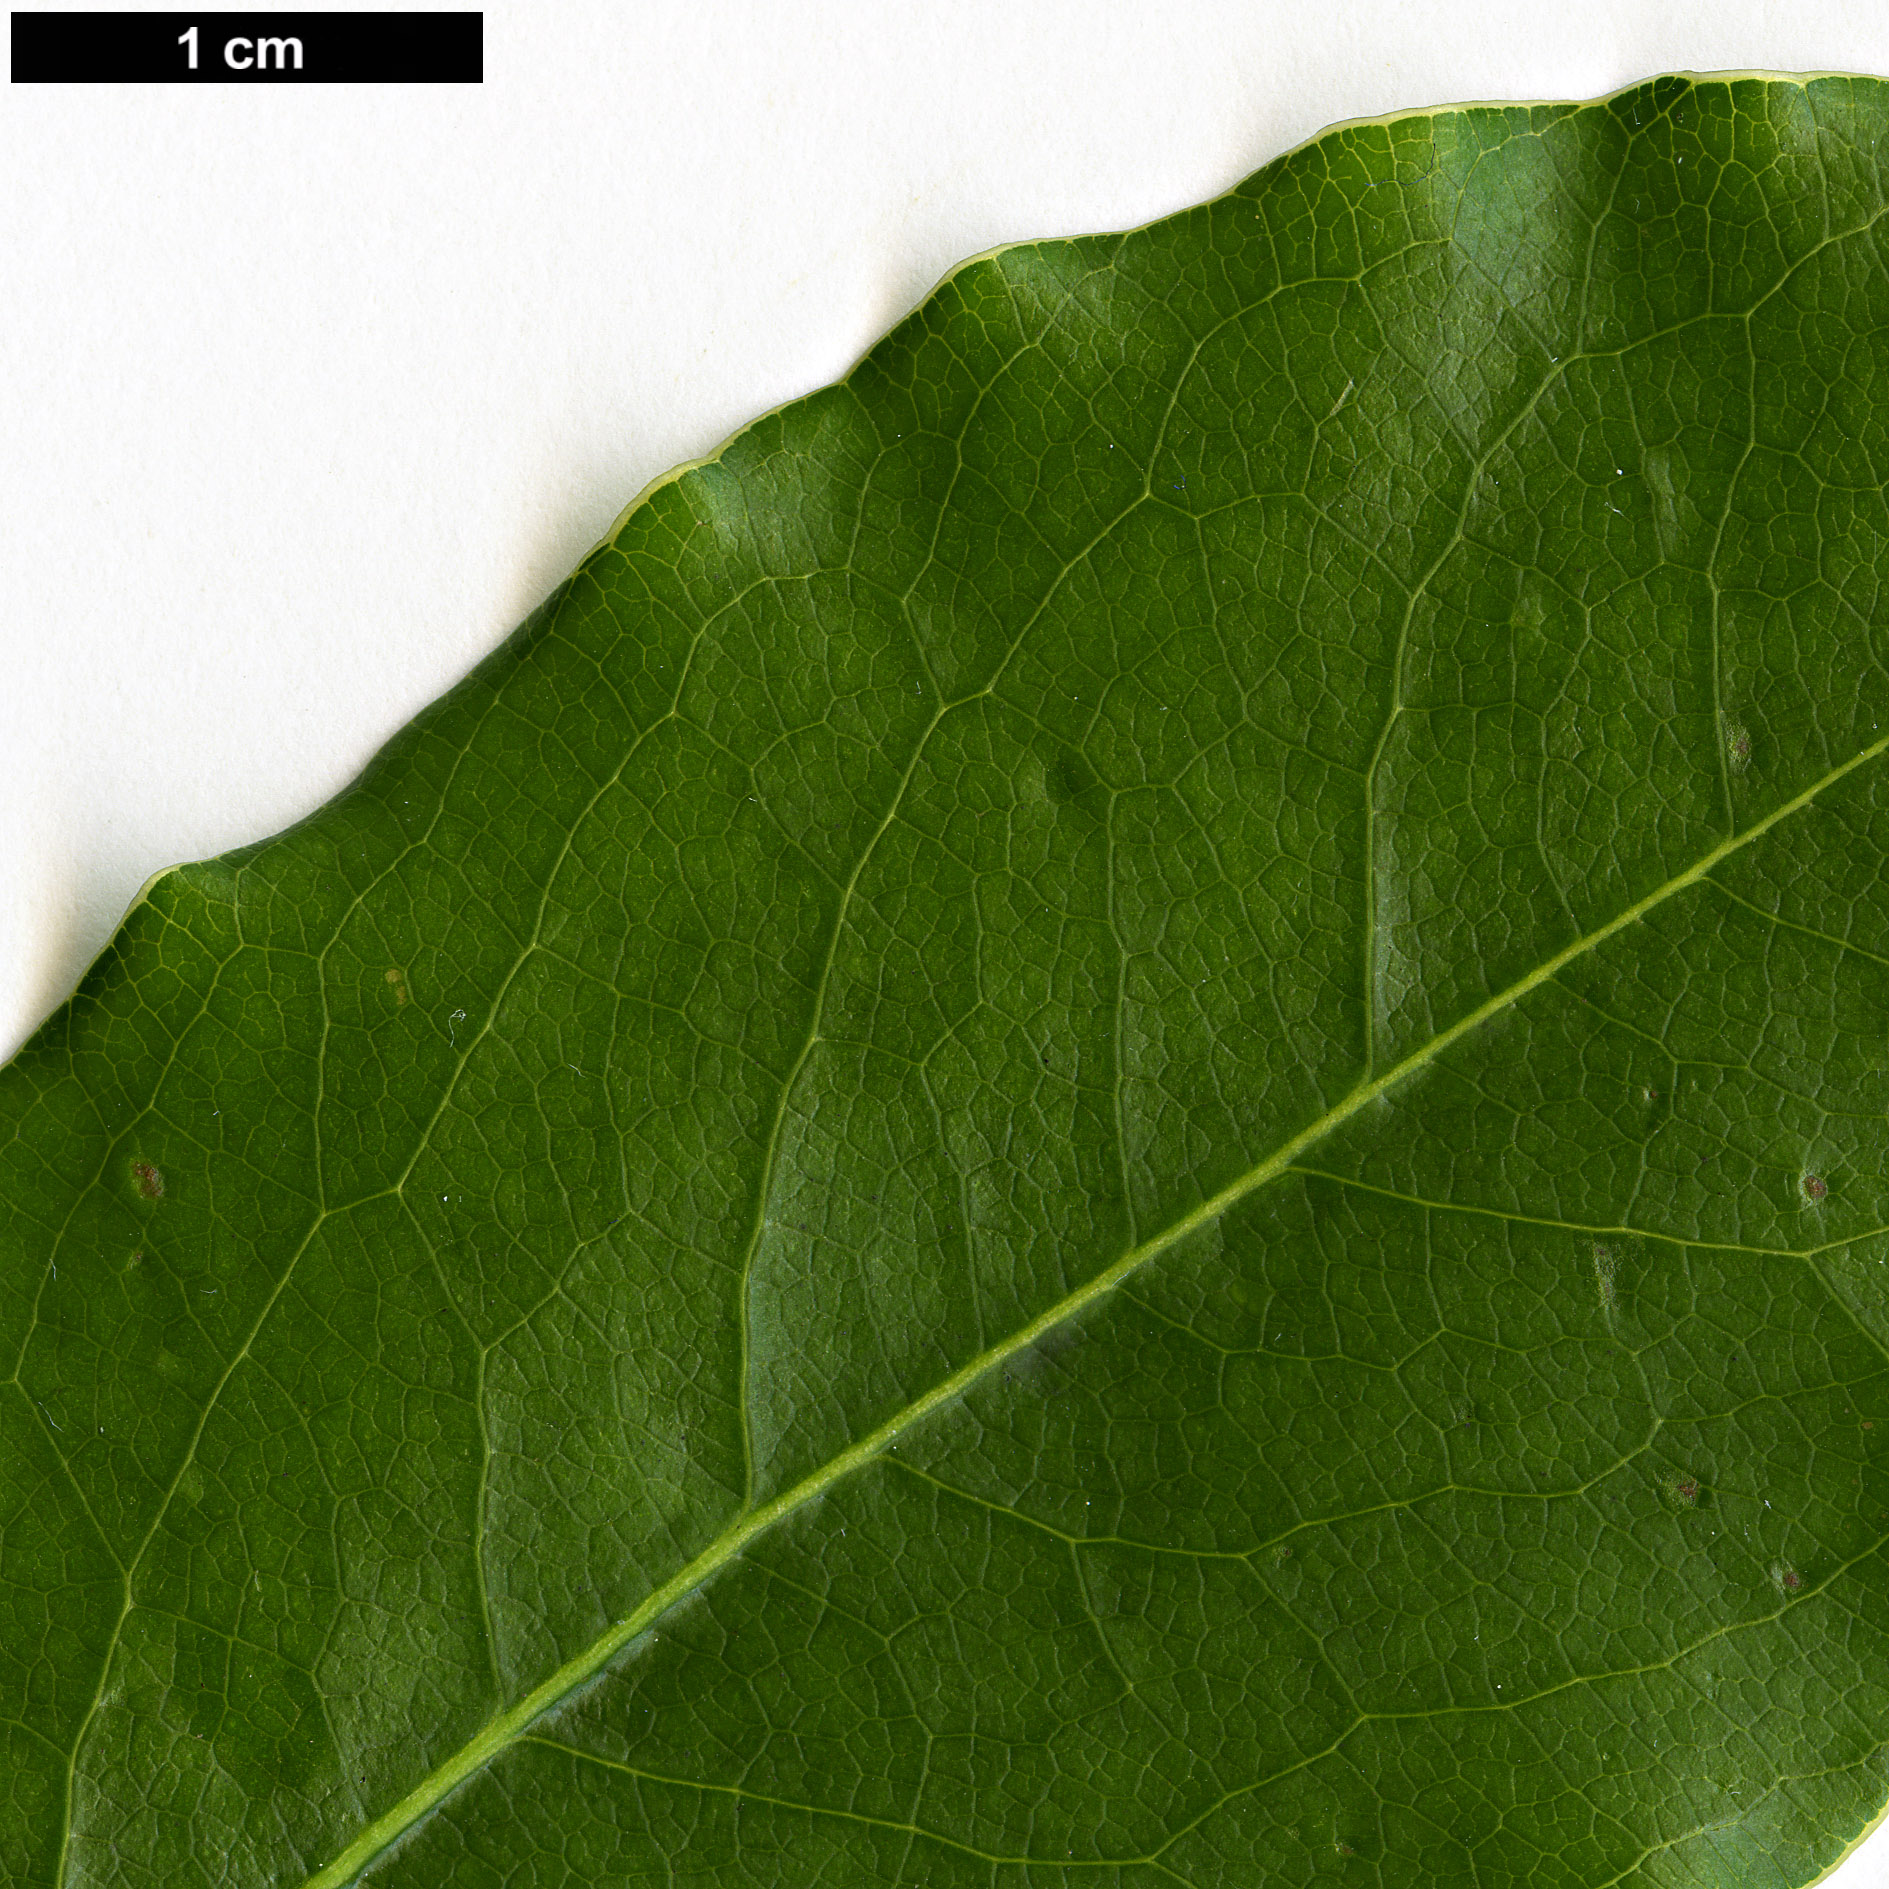 High resolution image: Family: Pittosporaceae - Genus: Pittosporum - Taxon: crispulum